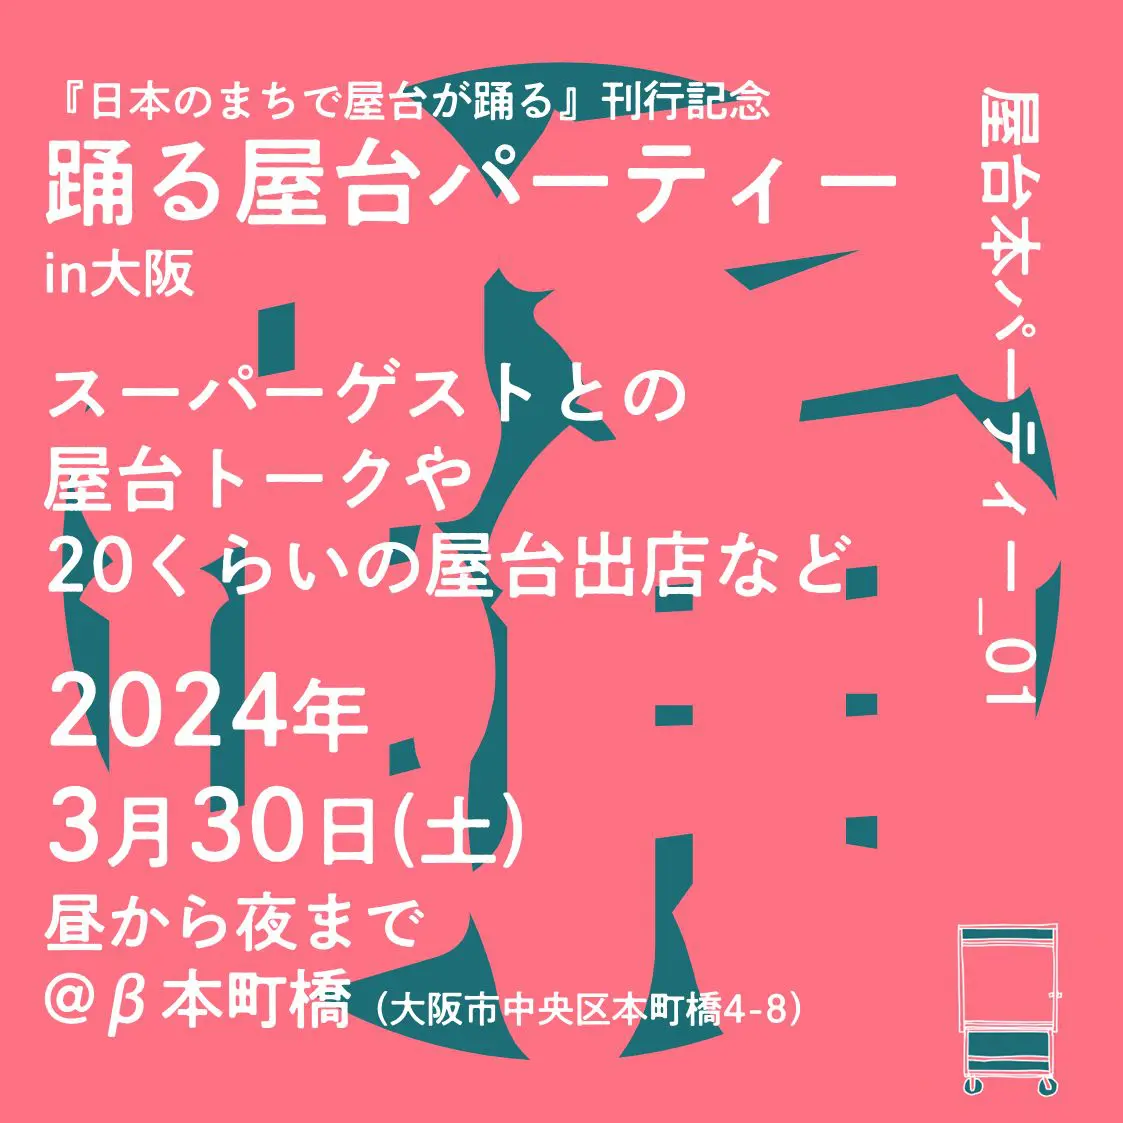 3/30『日本の街で屋台が躍る』本イベントに、岸本が登壇します。